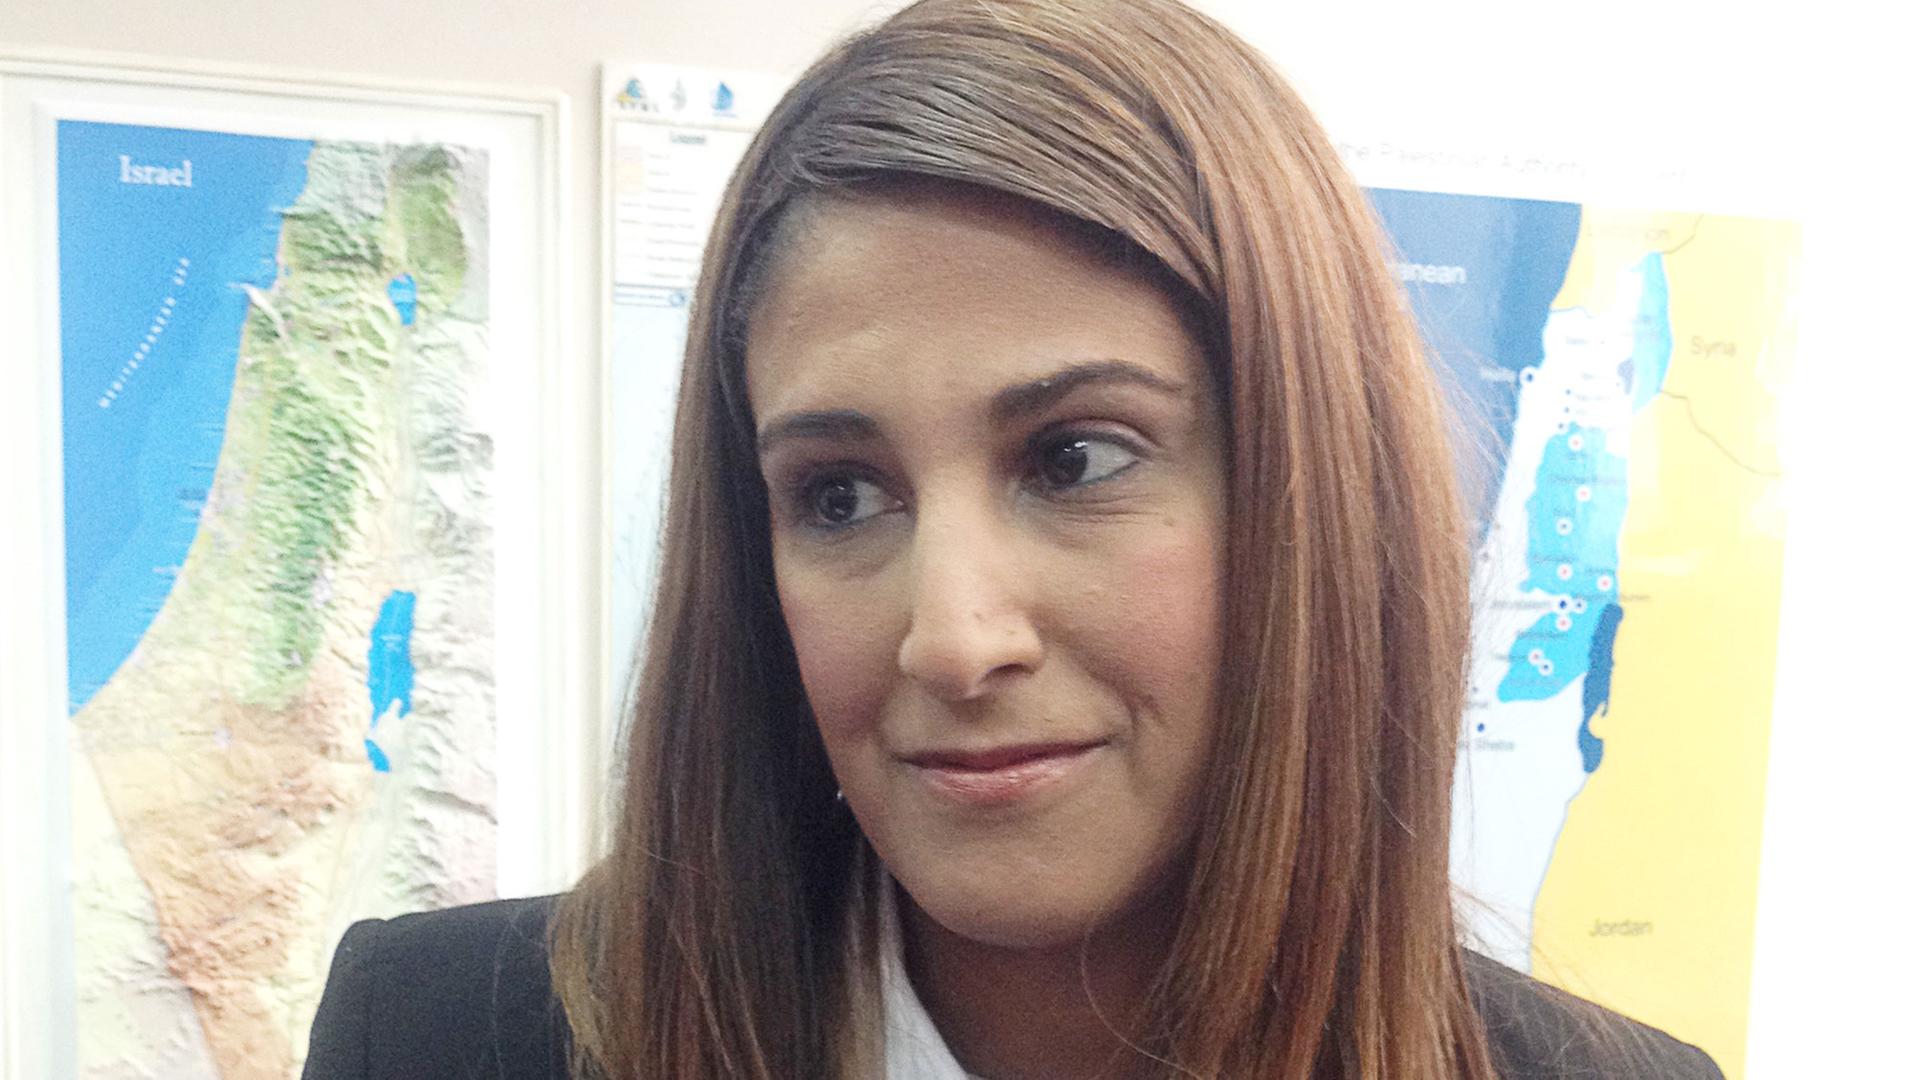 Die Gründerin der ultra-orthodoxen Partei für Frauen in Israel, Ruth Colian, aufgenommen am 16.02.2015 in Tel Aviv.